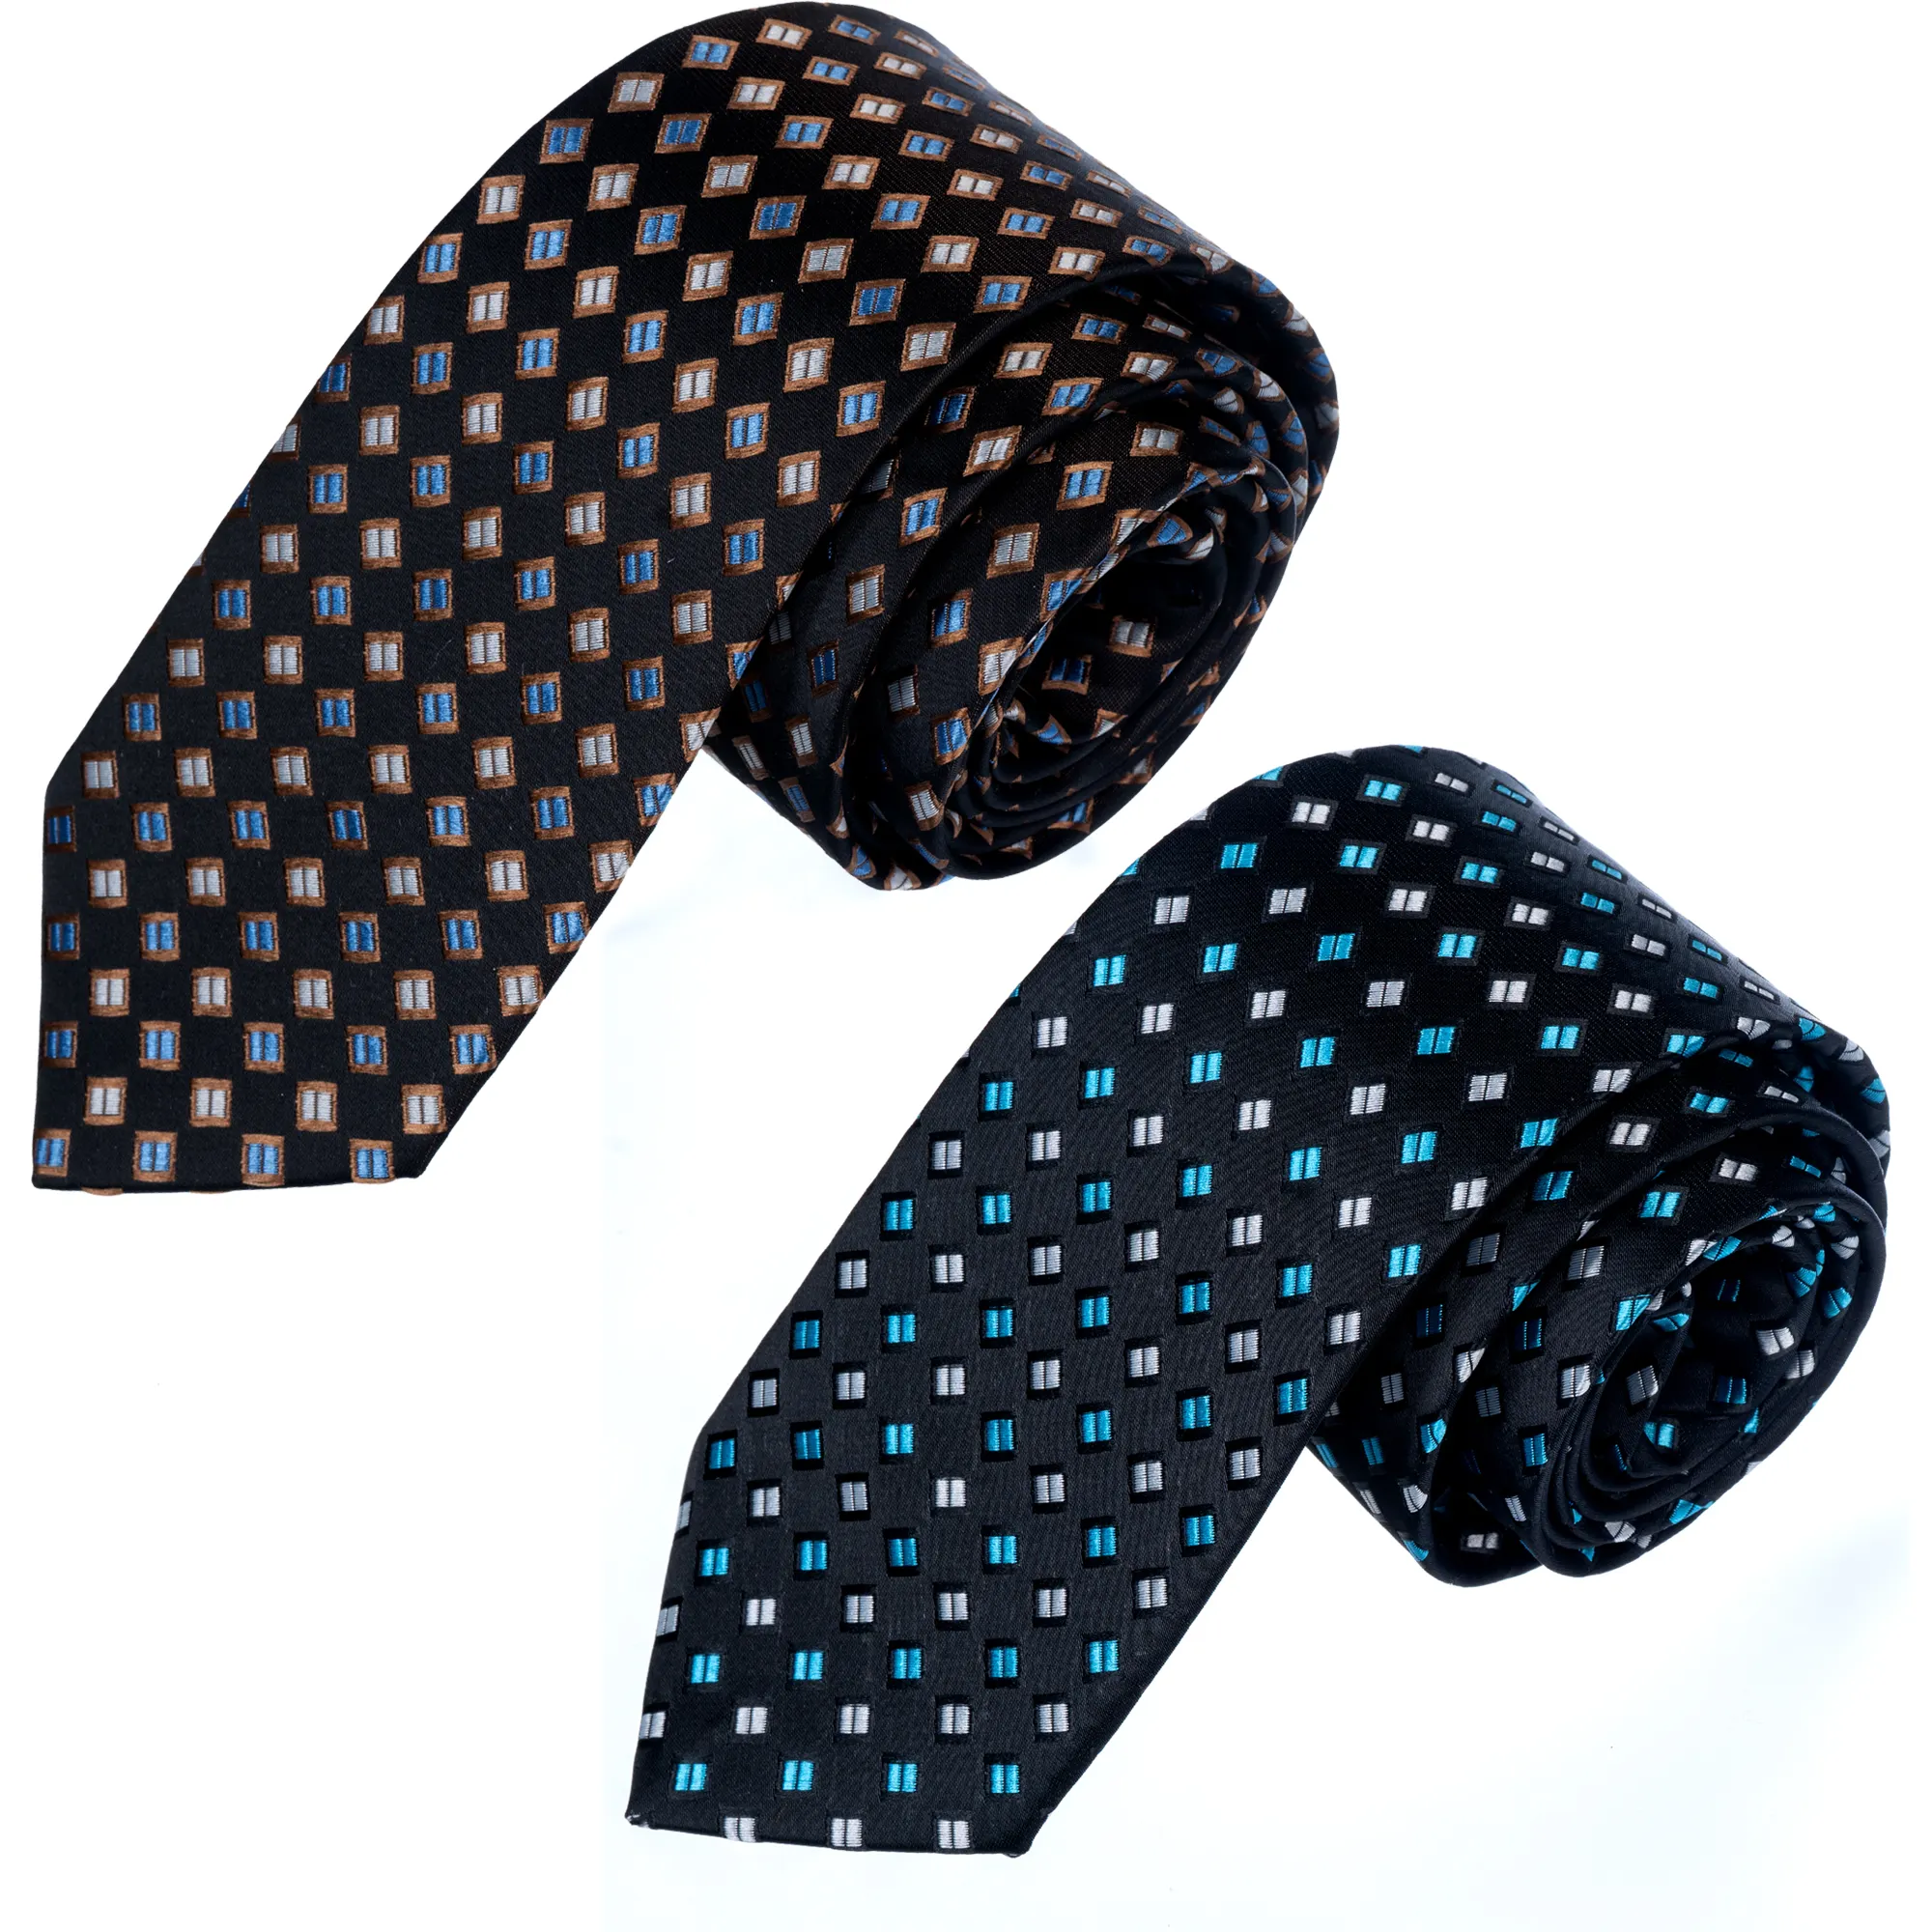 Blue Knitted Beige WoolenTie, Necktie, Neck Tie, Corbata, Gravate, Krawatte, Cravatta, Fashion Tie agile supply chains